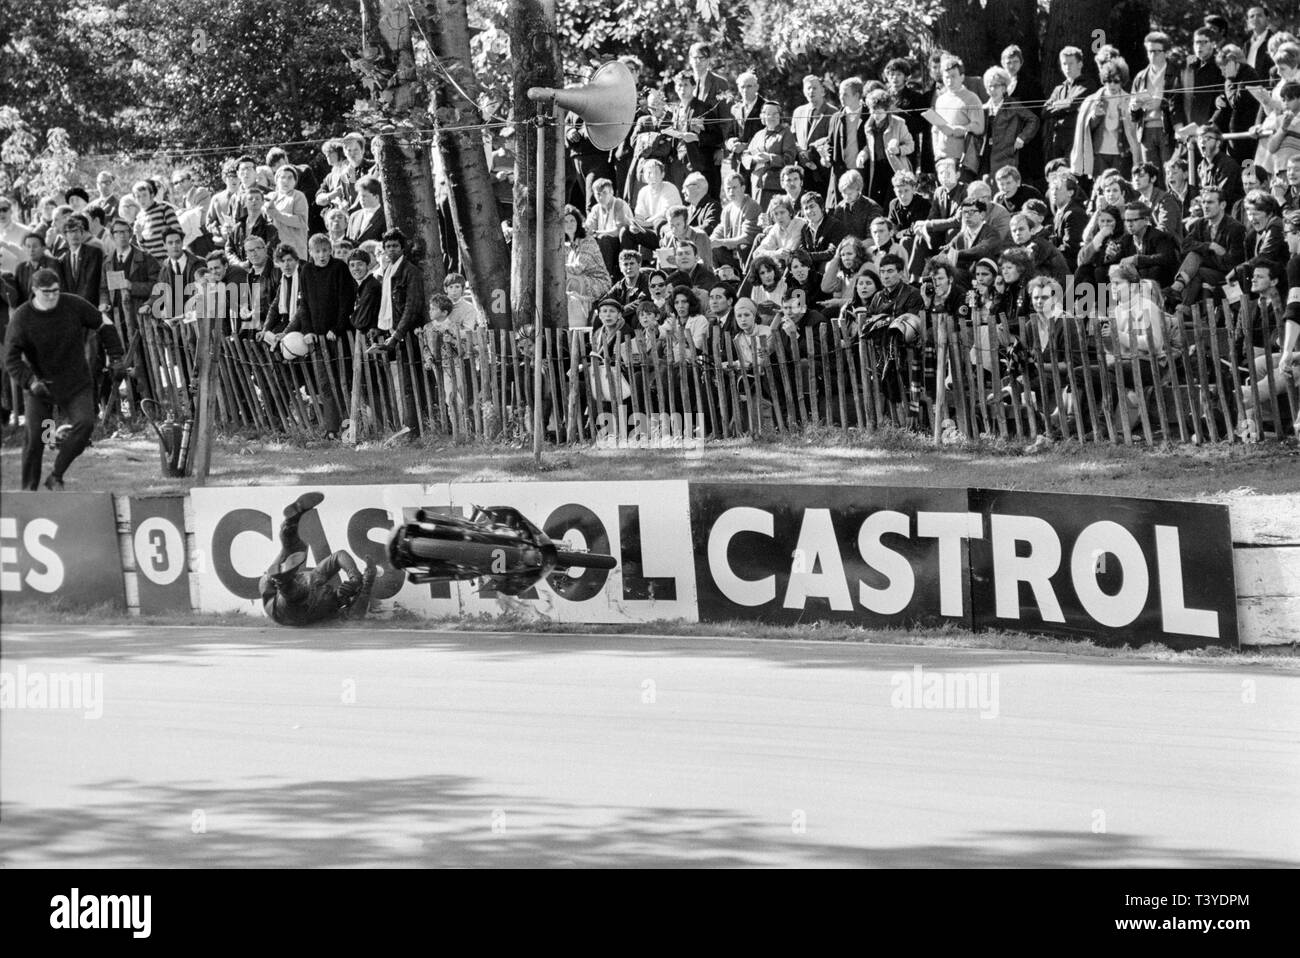 Motorrad Racing am Crystal Palace in der Nähe von London im Jahre 1968. Ein Motorrad Racer stürzt und fällt an die Strecke Wand während in der Annäherung an einen auf der Strecke zu verbiegen. Das Crystal Palace Rennstrecke wurde 1972 geschlossen. Stockfoto